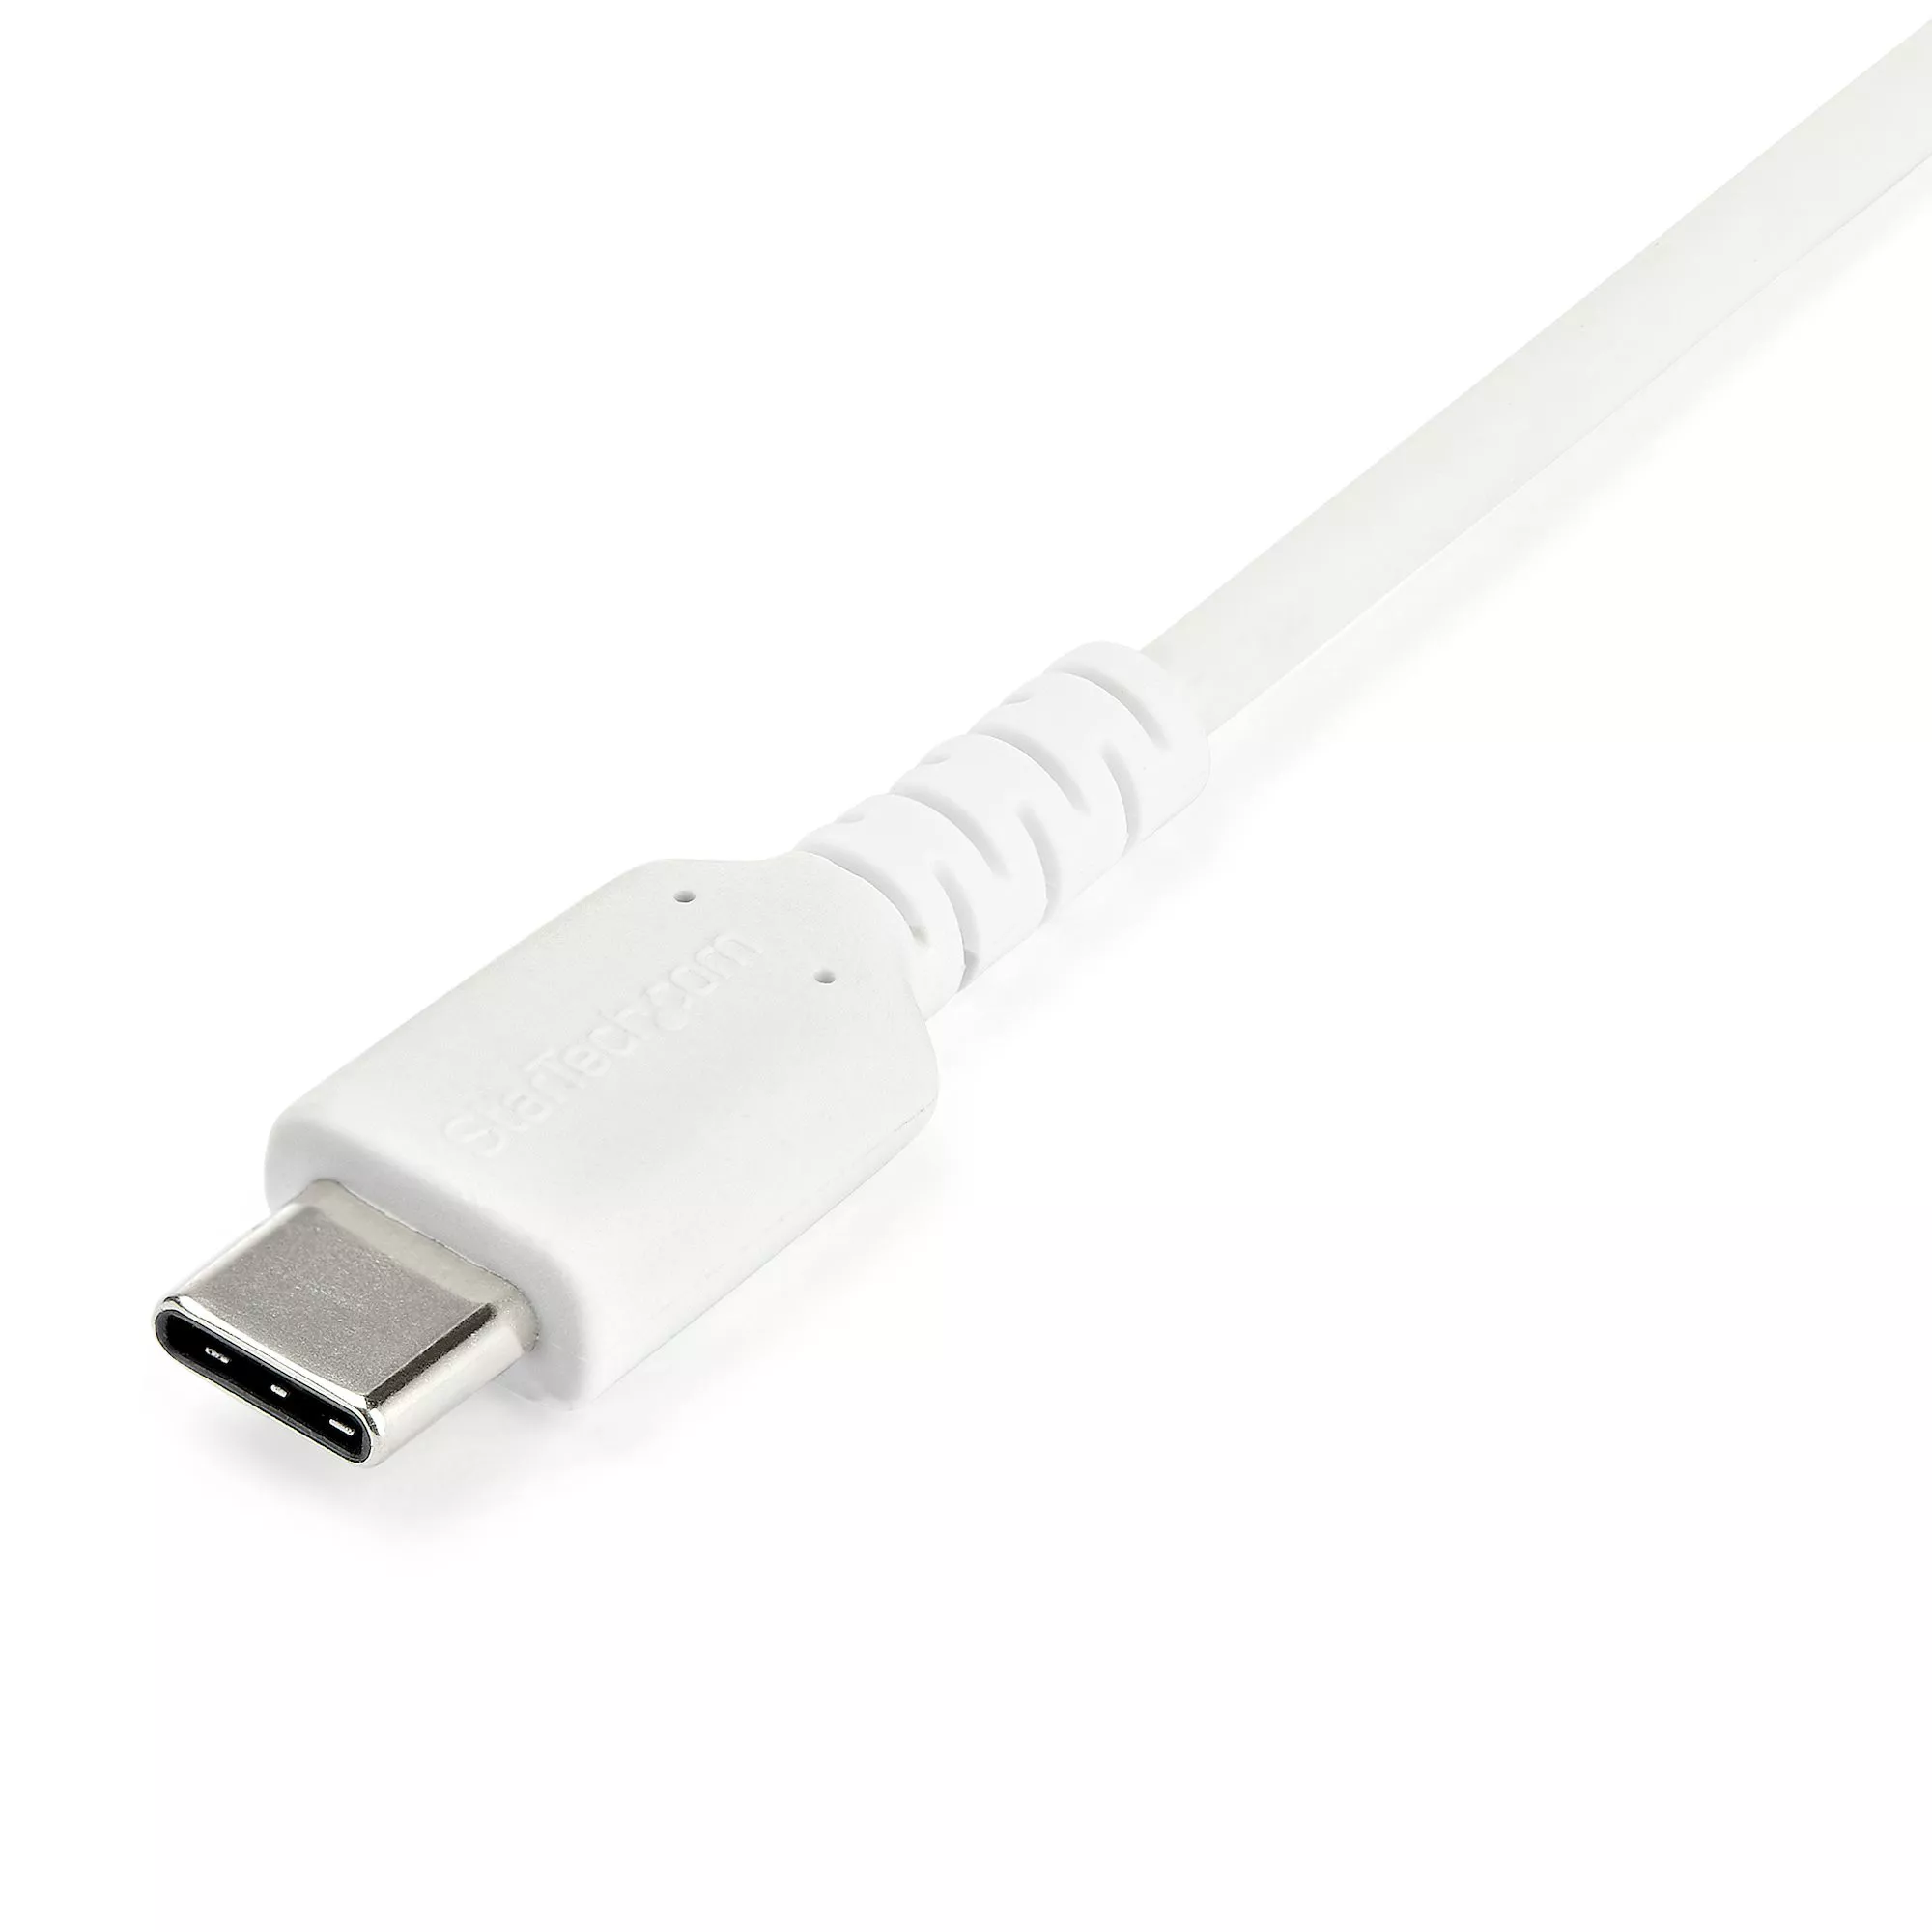 StarTech.com Câble de Charge USB C de 2m - Cordon USB-C, 60W PD 3A - Câble  USB C Coudé Noir - Fibre Aramide Robuste - Câble USB 2.0 Type C - Chargeur